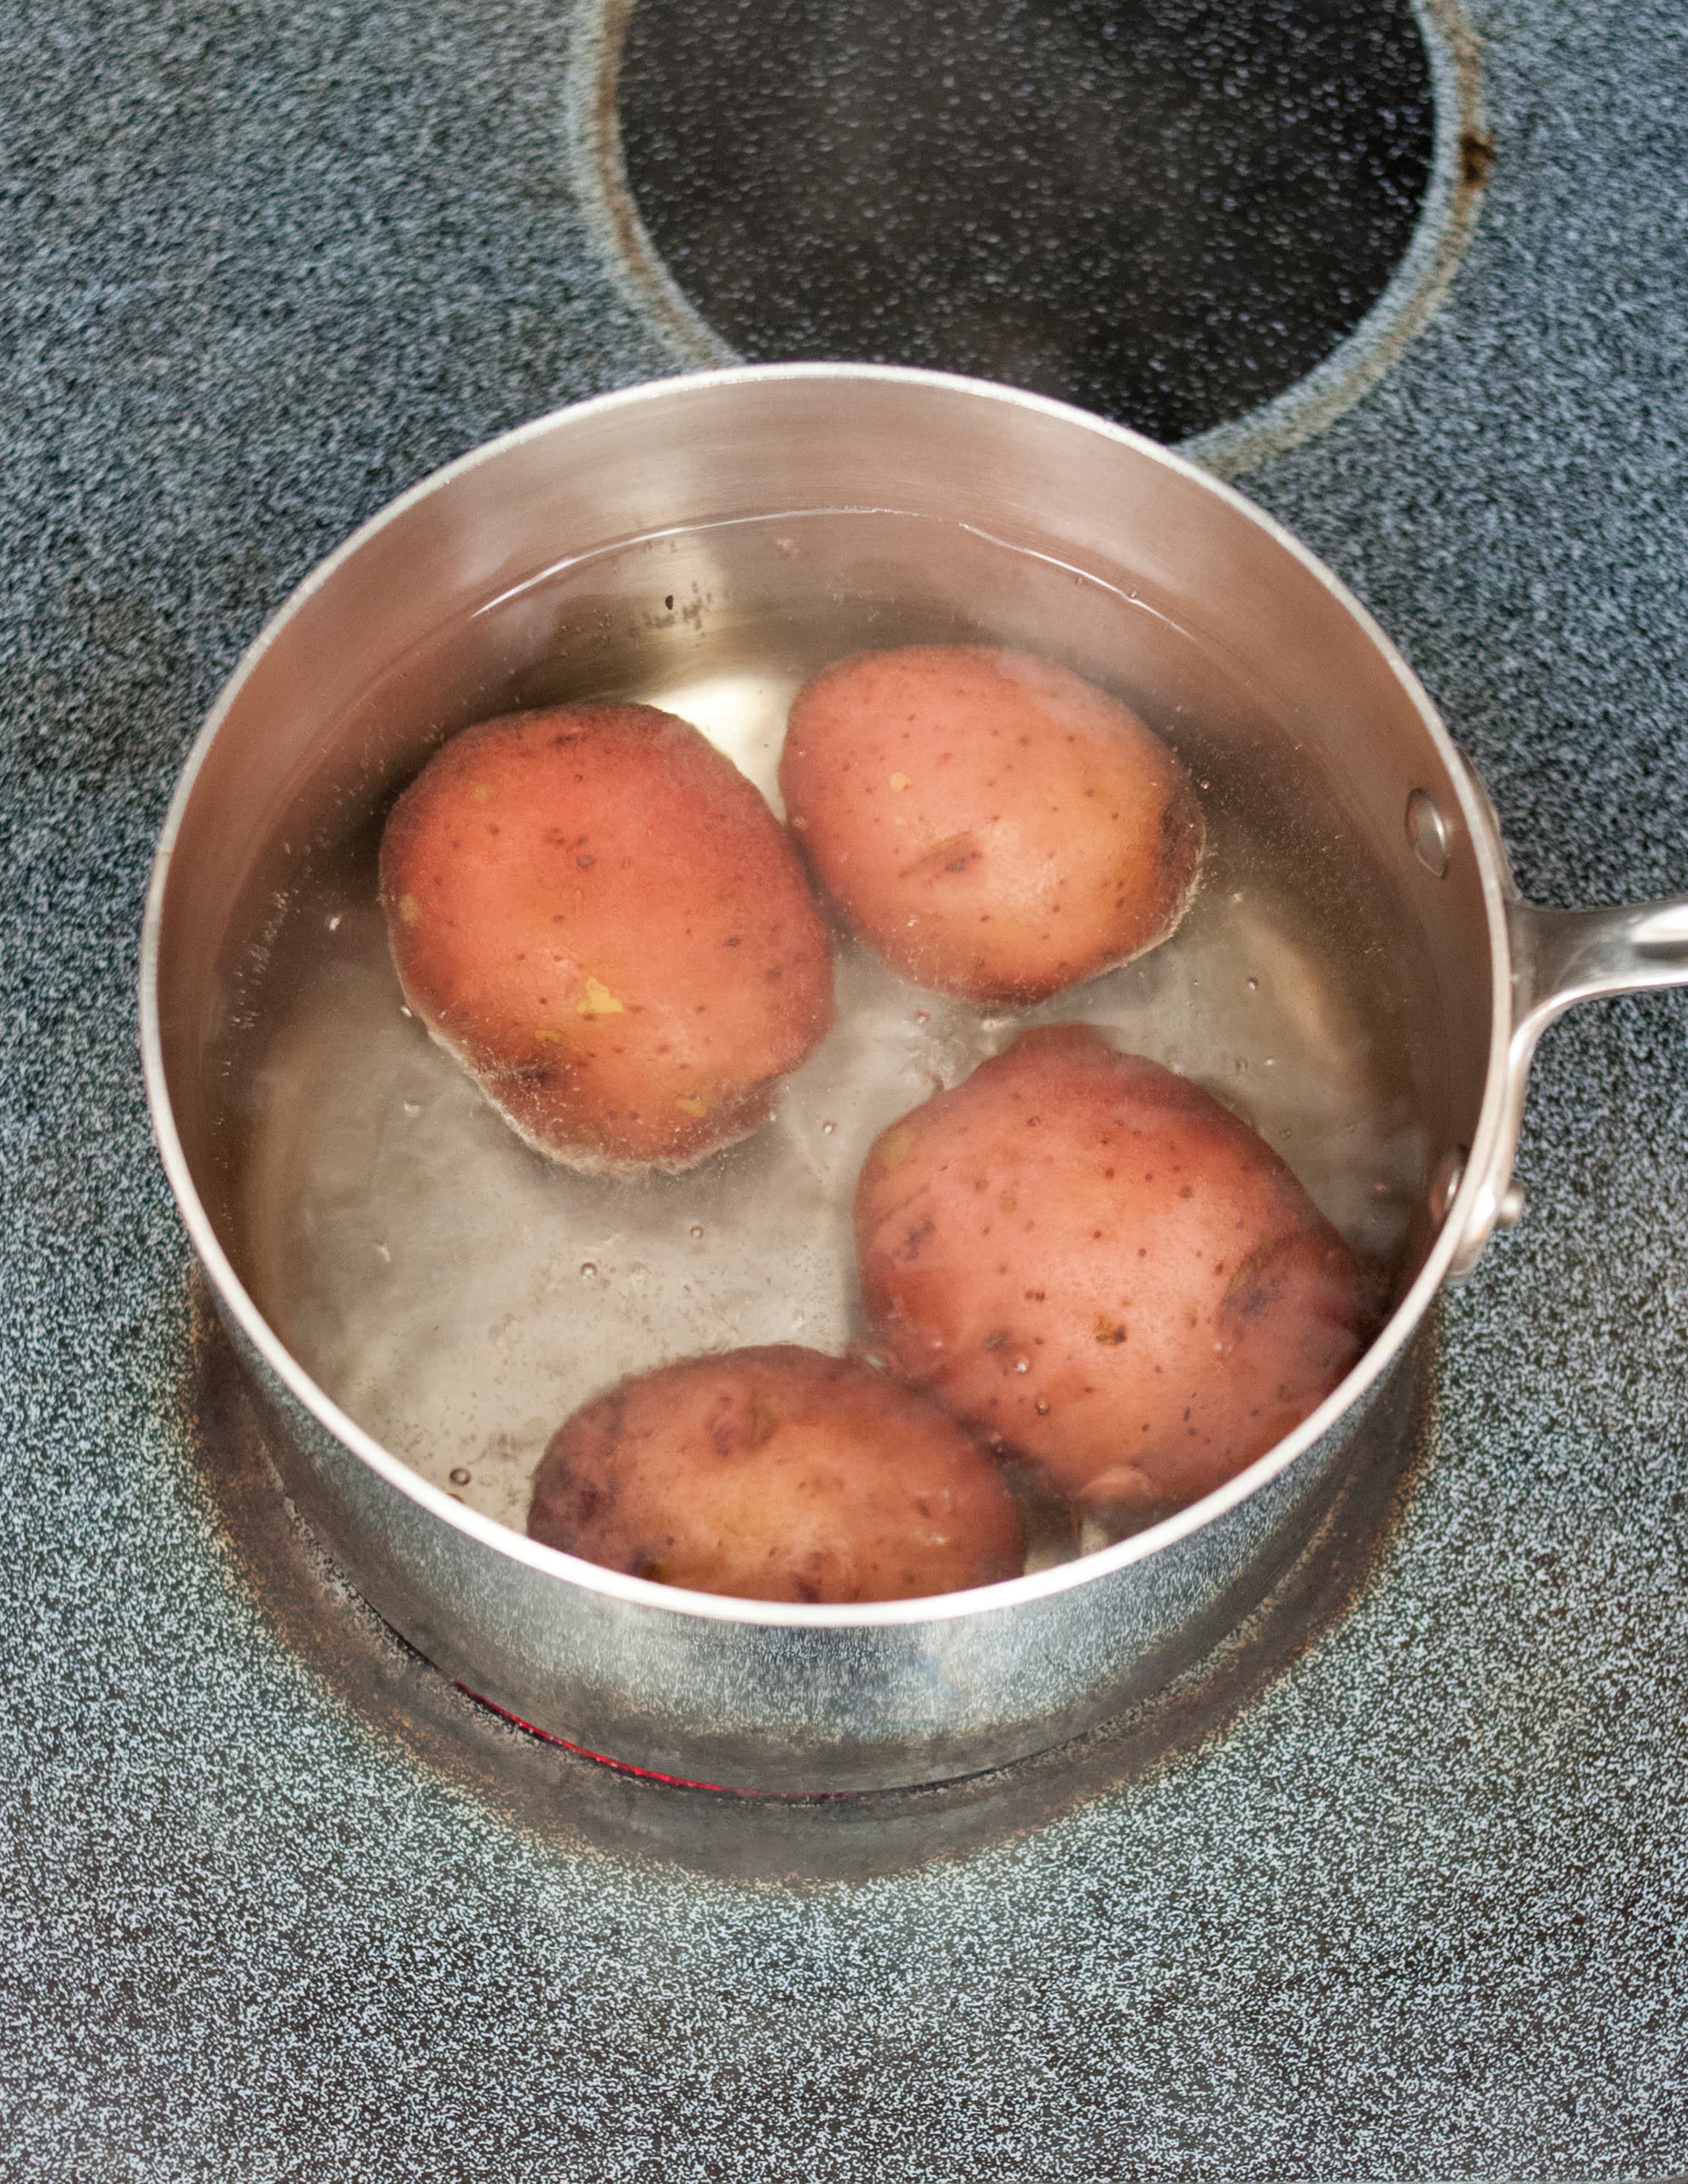 Картошку варить в холодной или горячей воде. Картофель в кастрюле. Варка картофеля в мундире. Картофель варится. День варки картофеля.